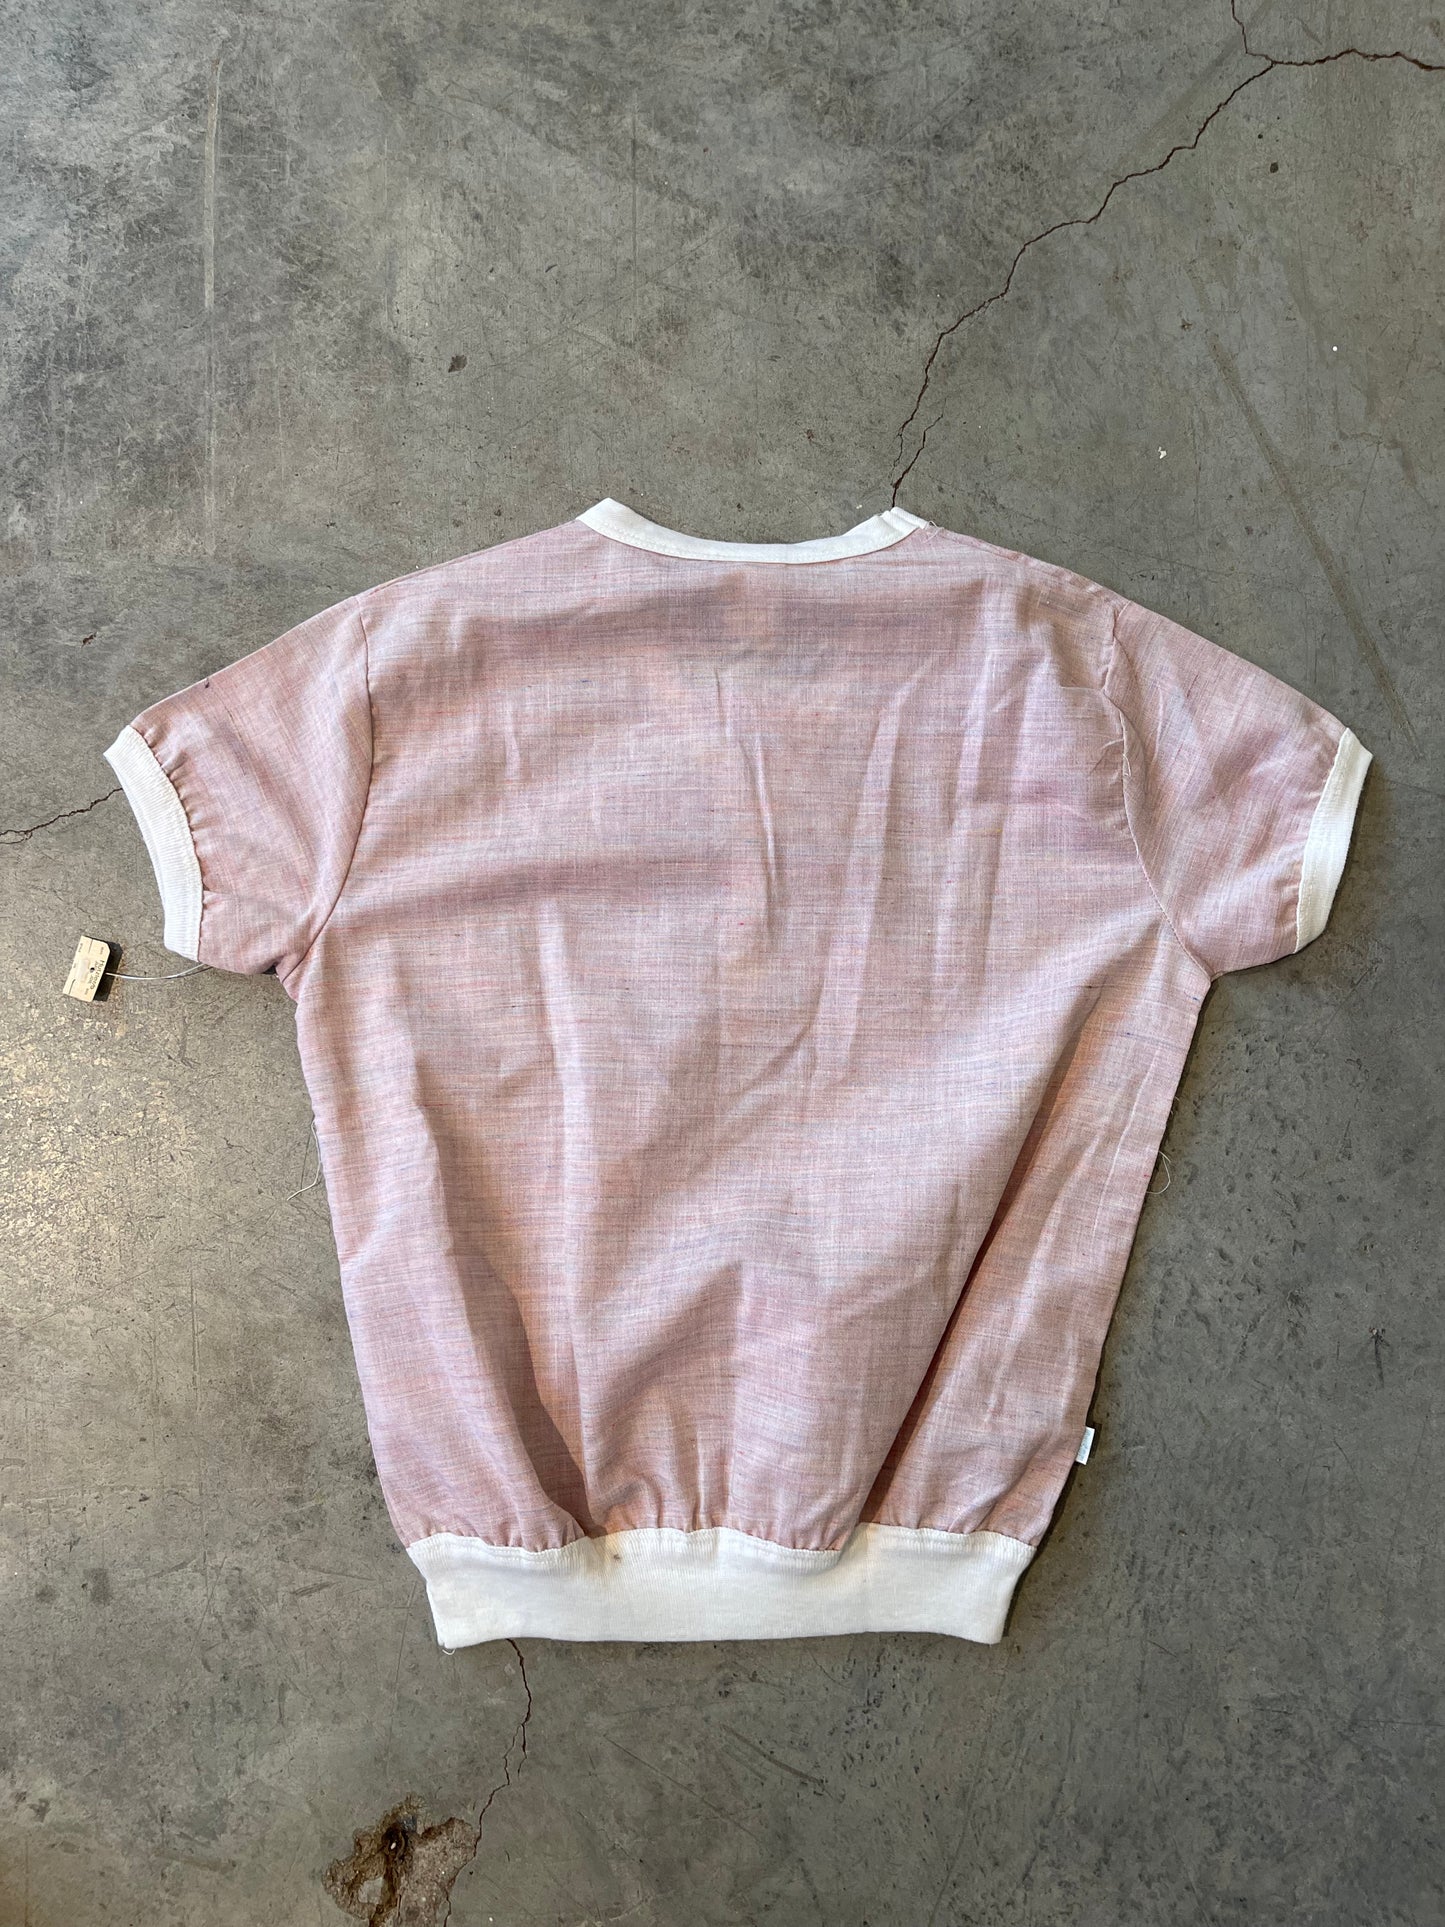 Vintage Teen Levi’s Shirt—WMNS XS